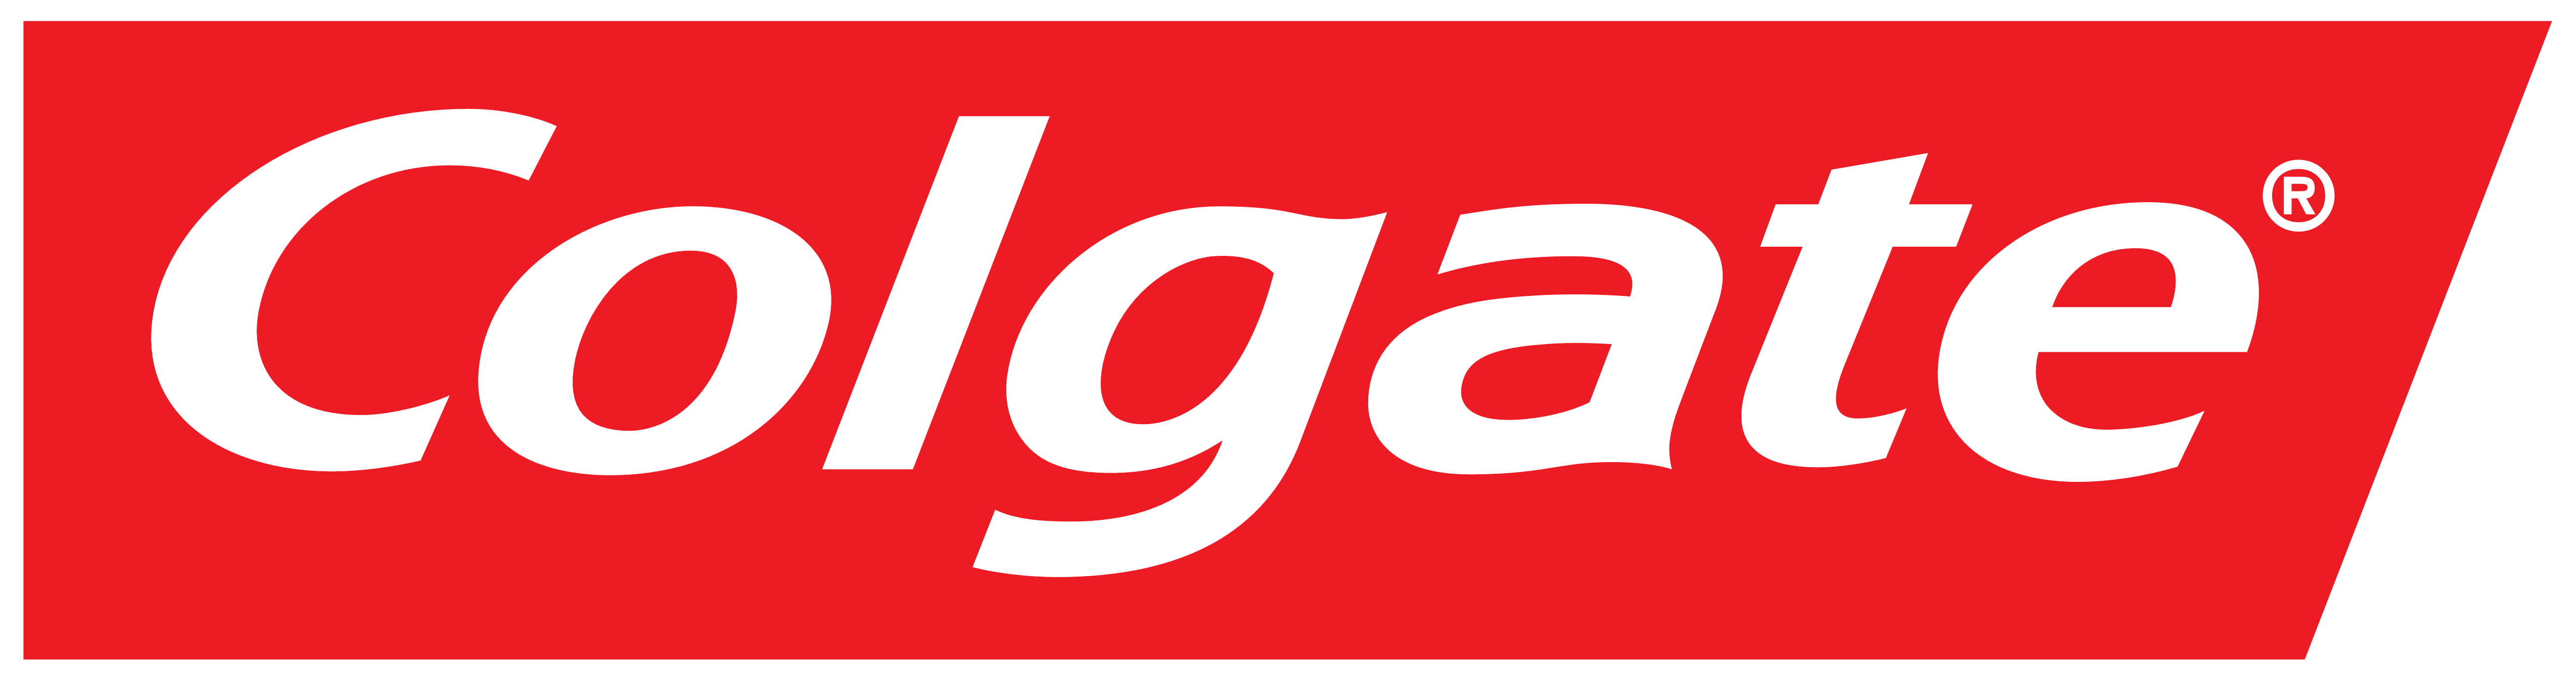 Colgate Logo PNG Image.